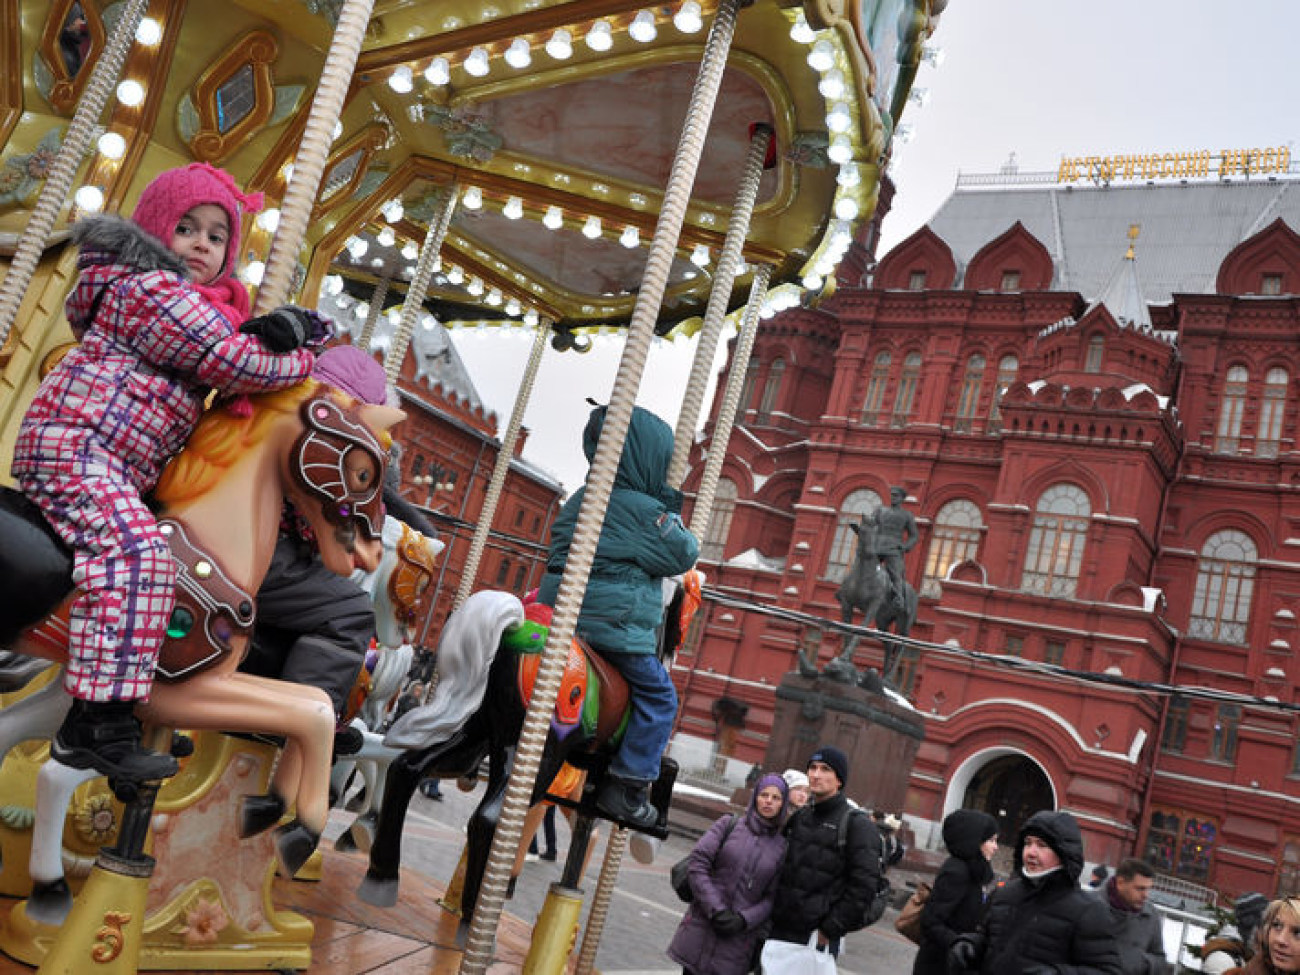 В Москве проходит новогодняя Страсбургская ярмарка